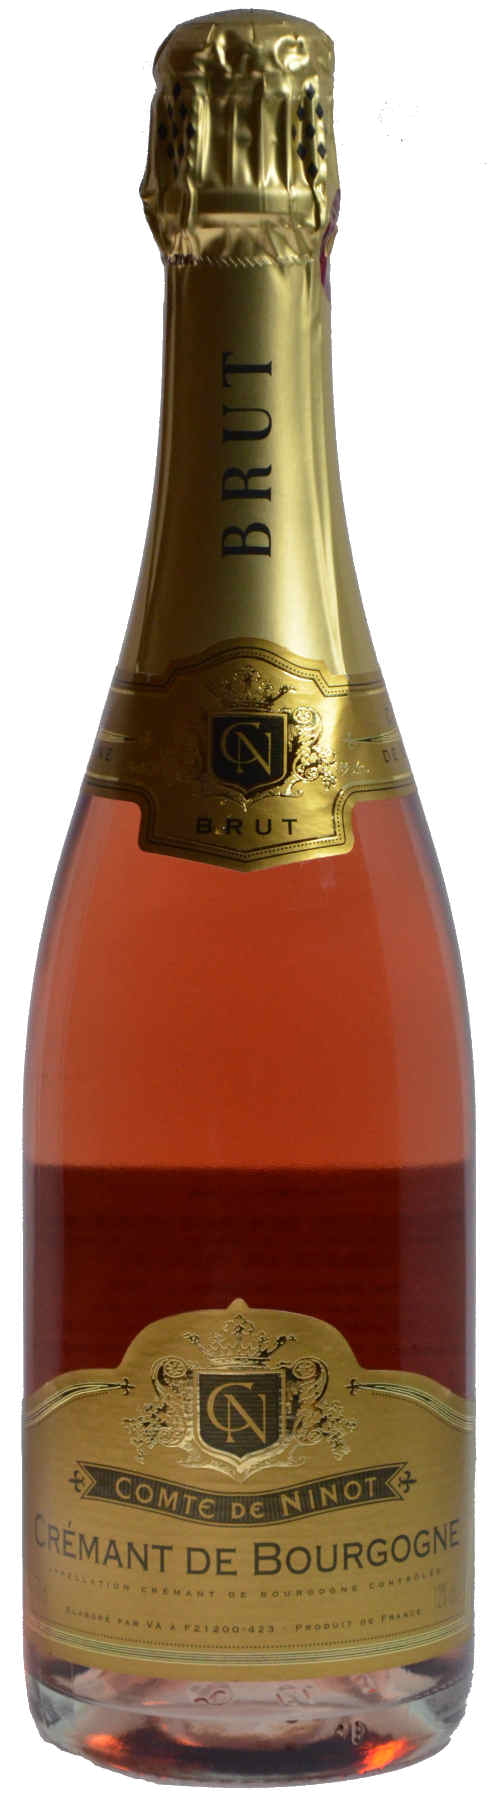 Comte de Ninot Crémant de Bourgogne Brut Rosé